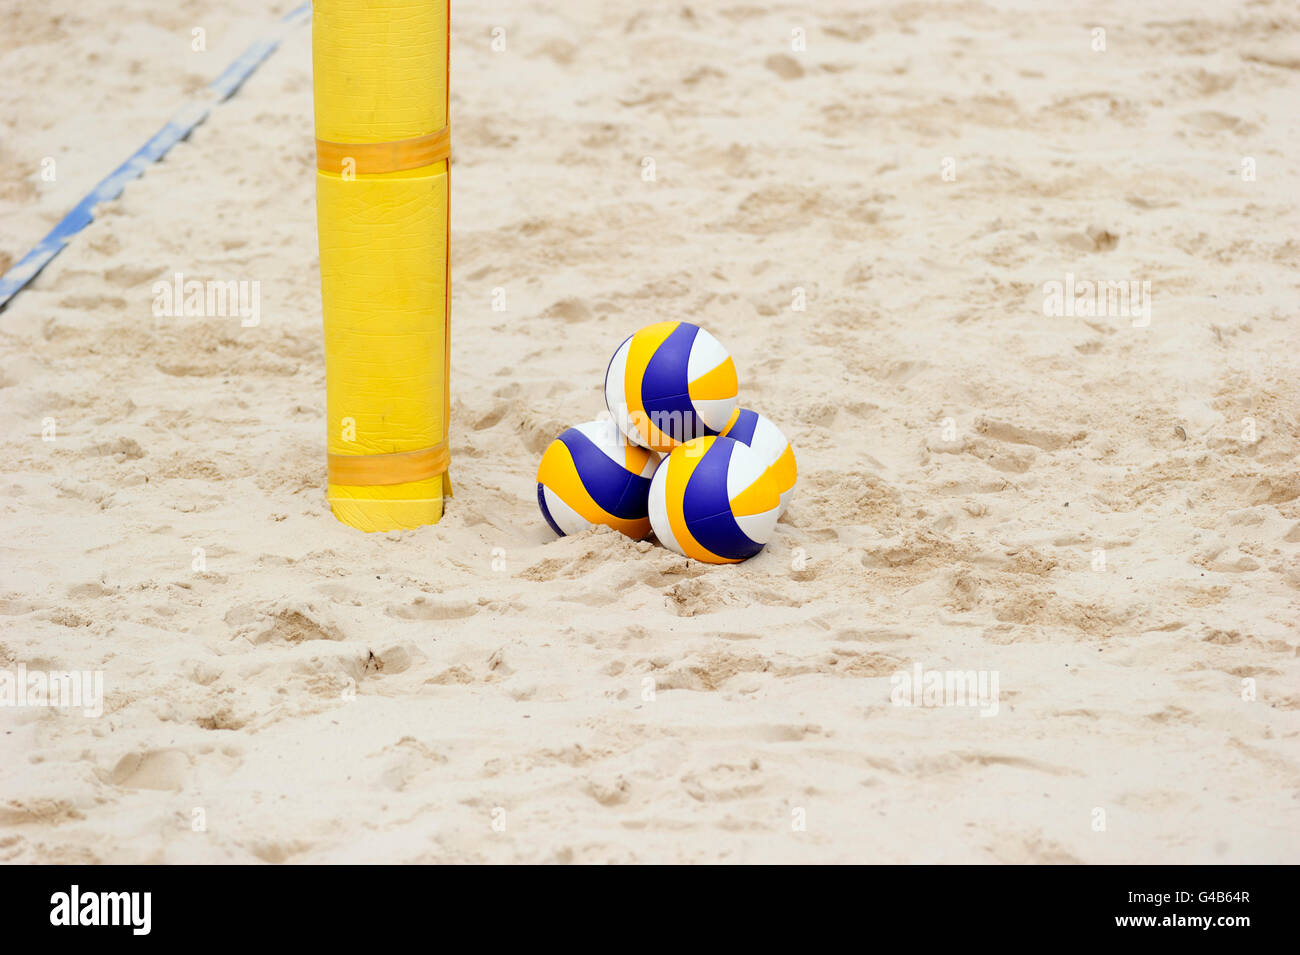 Volleyball-Strand ist ein Stapel von drei Volleybälle sitzen in den Sand alles bereit und wartet Turnierspiel. Stockfoto